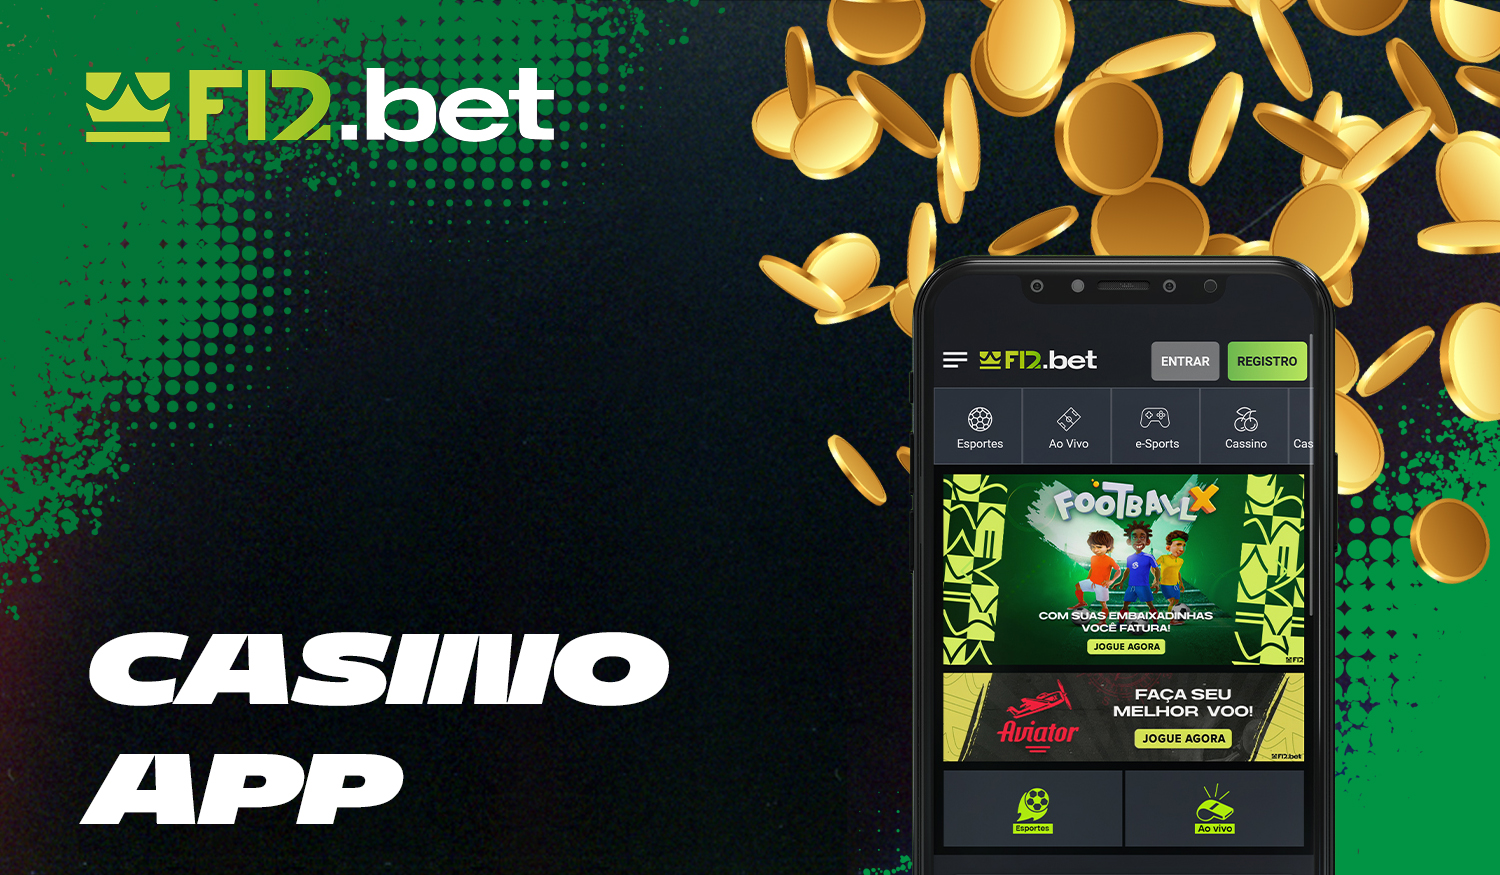 Como os utilizadores brasileiros podem jogar no F12bet Casino através da aplicação